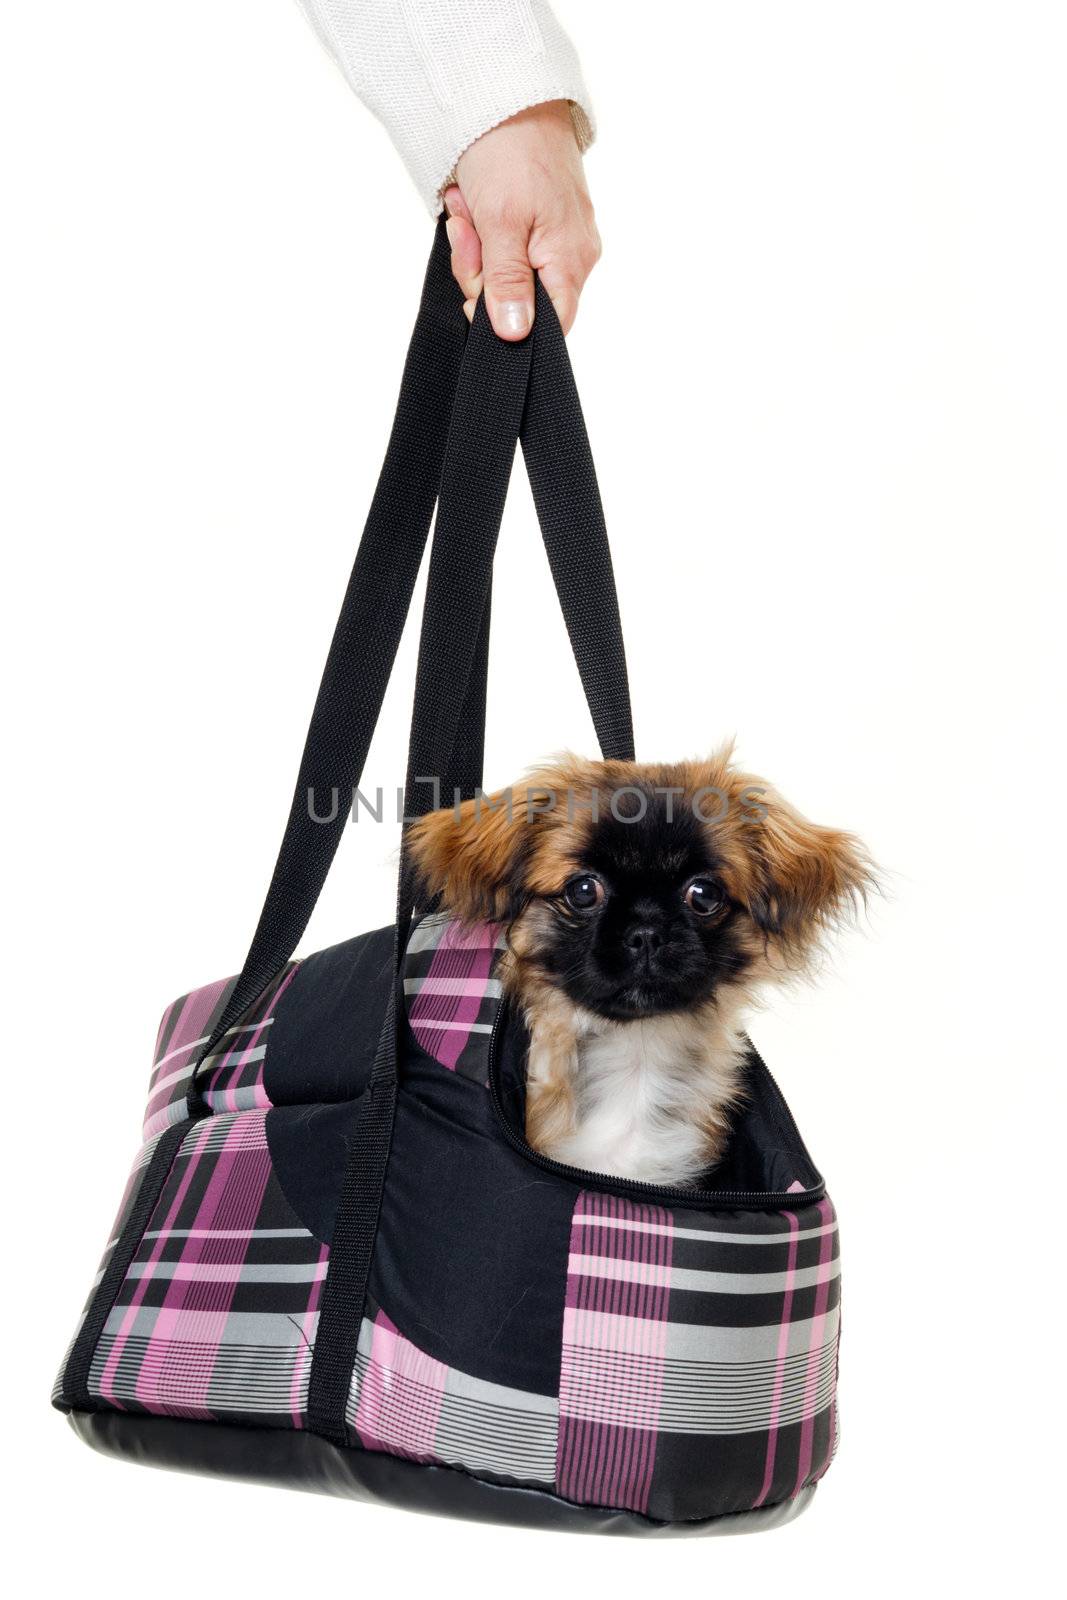 Puppy dog in bag by cfoto